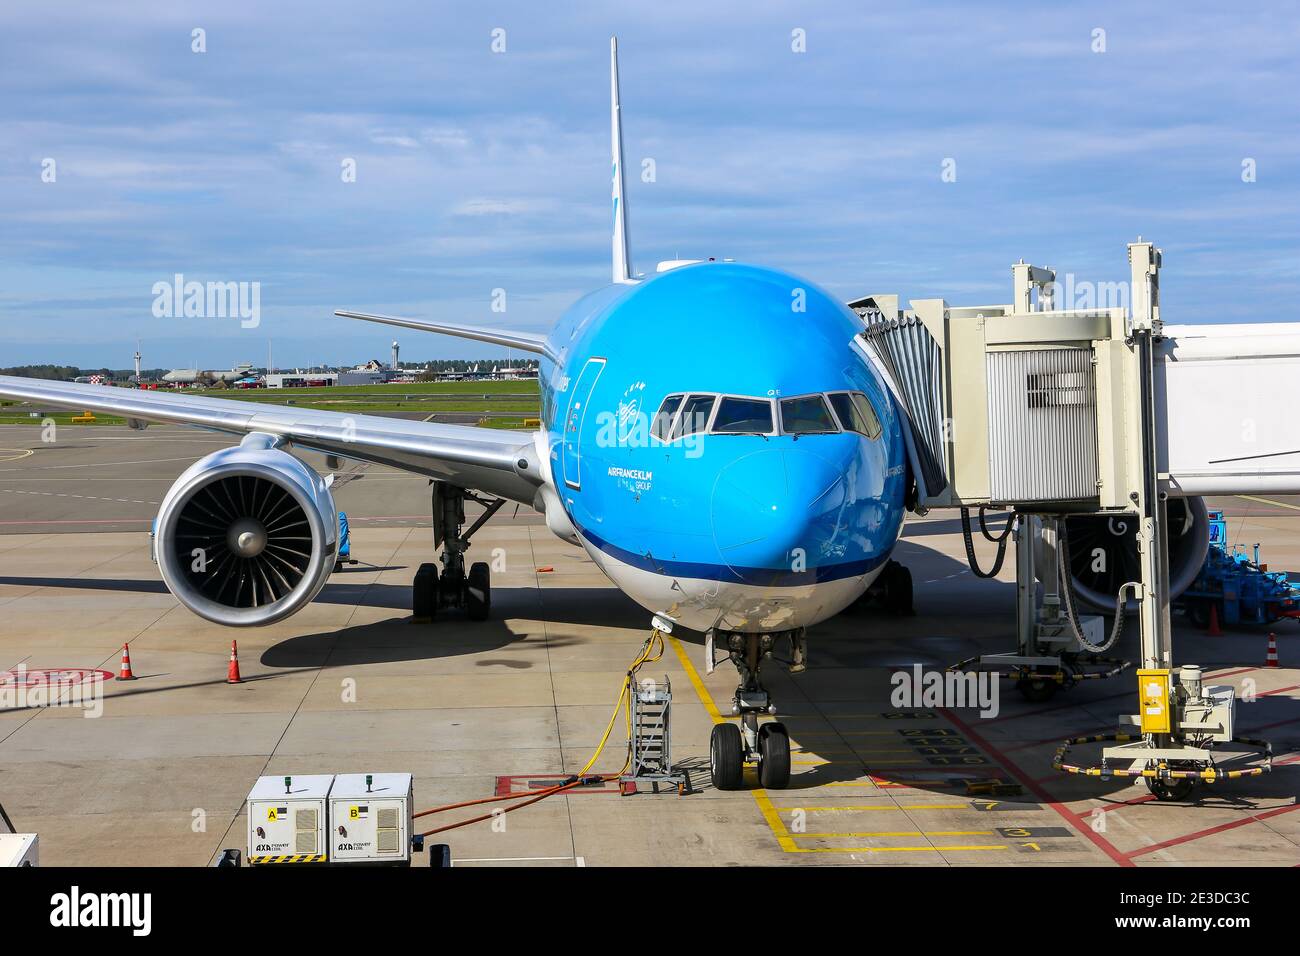 Amsterdam, Paesi Bassi, 30/09/20. KLM Airlines Boeing 777 aerei a reazione parcheggiati al cancello dell'aeroporto di Amsterdam Schiphol (AMS), con veicoli aeroportuali. Foto Stock